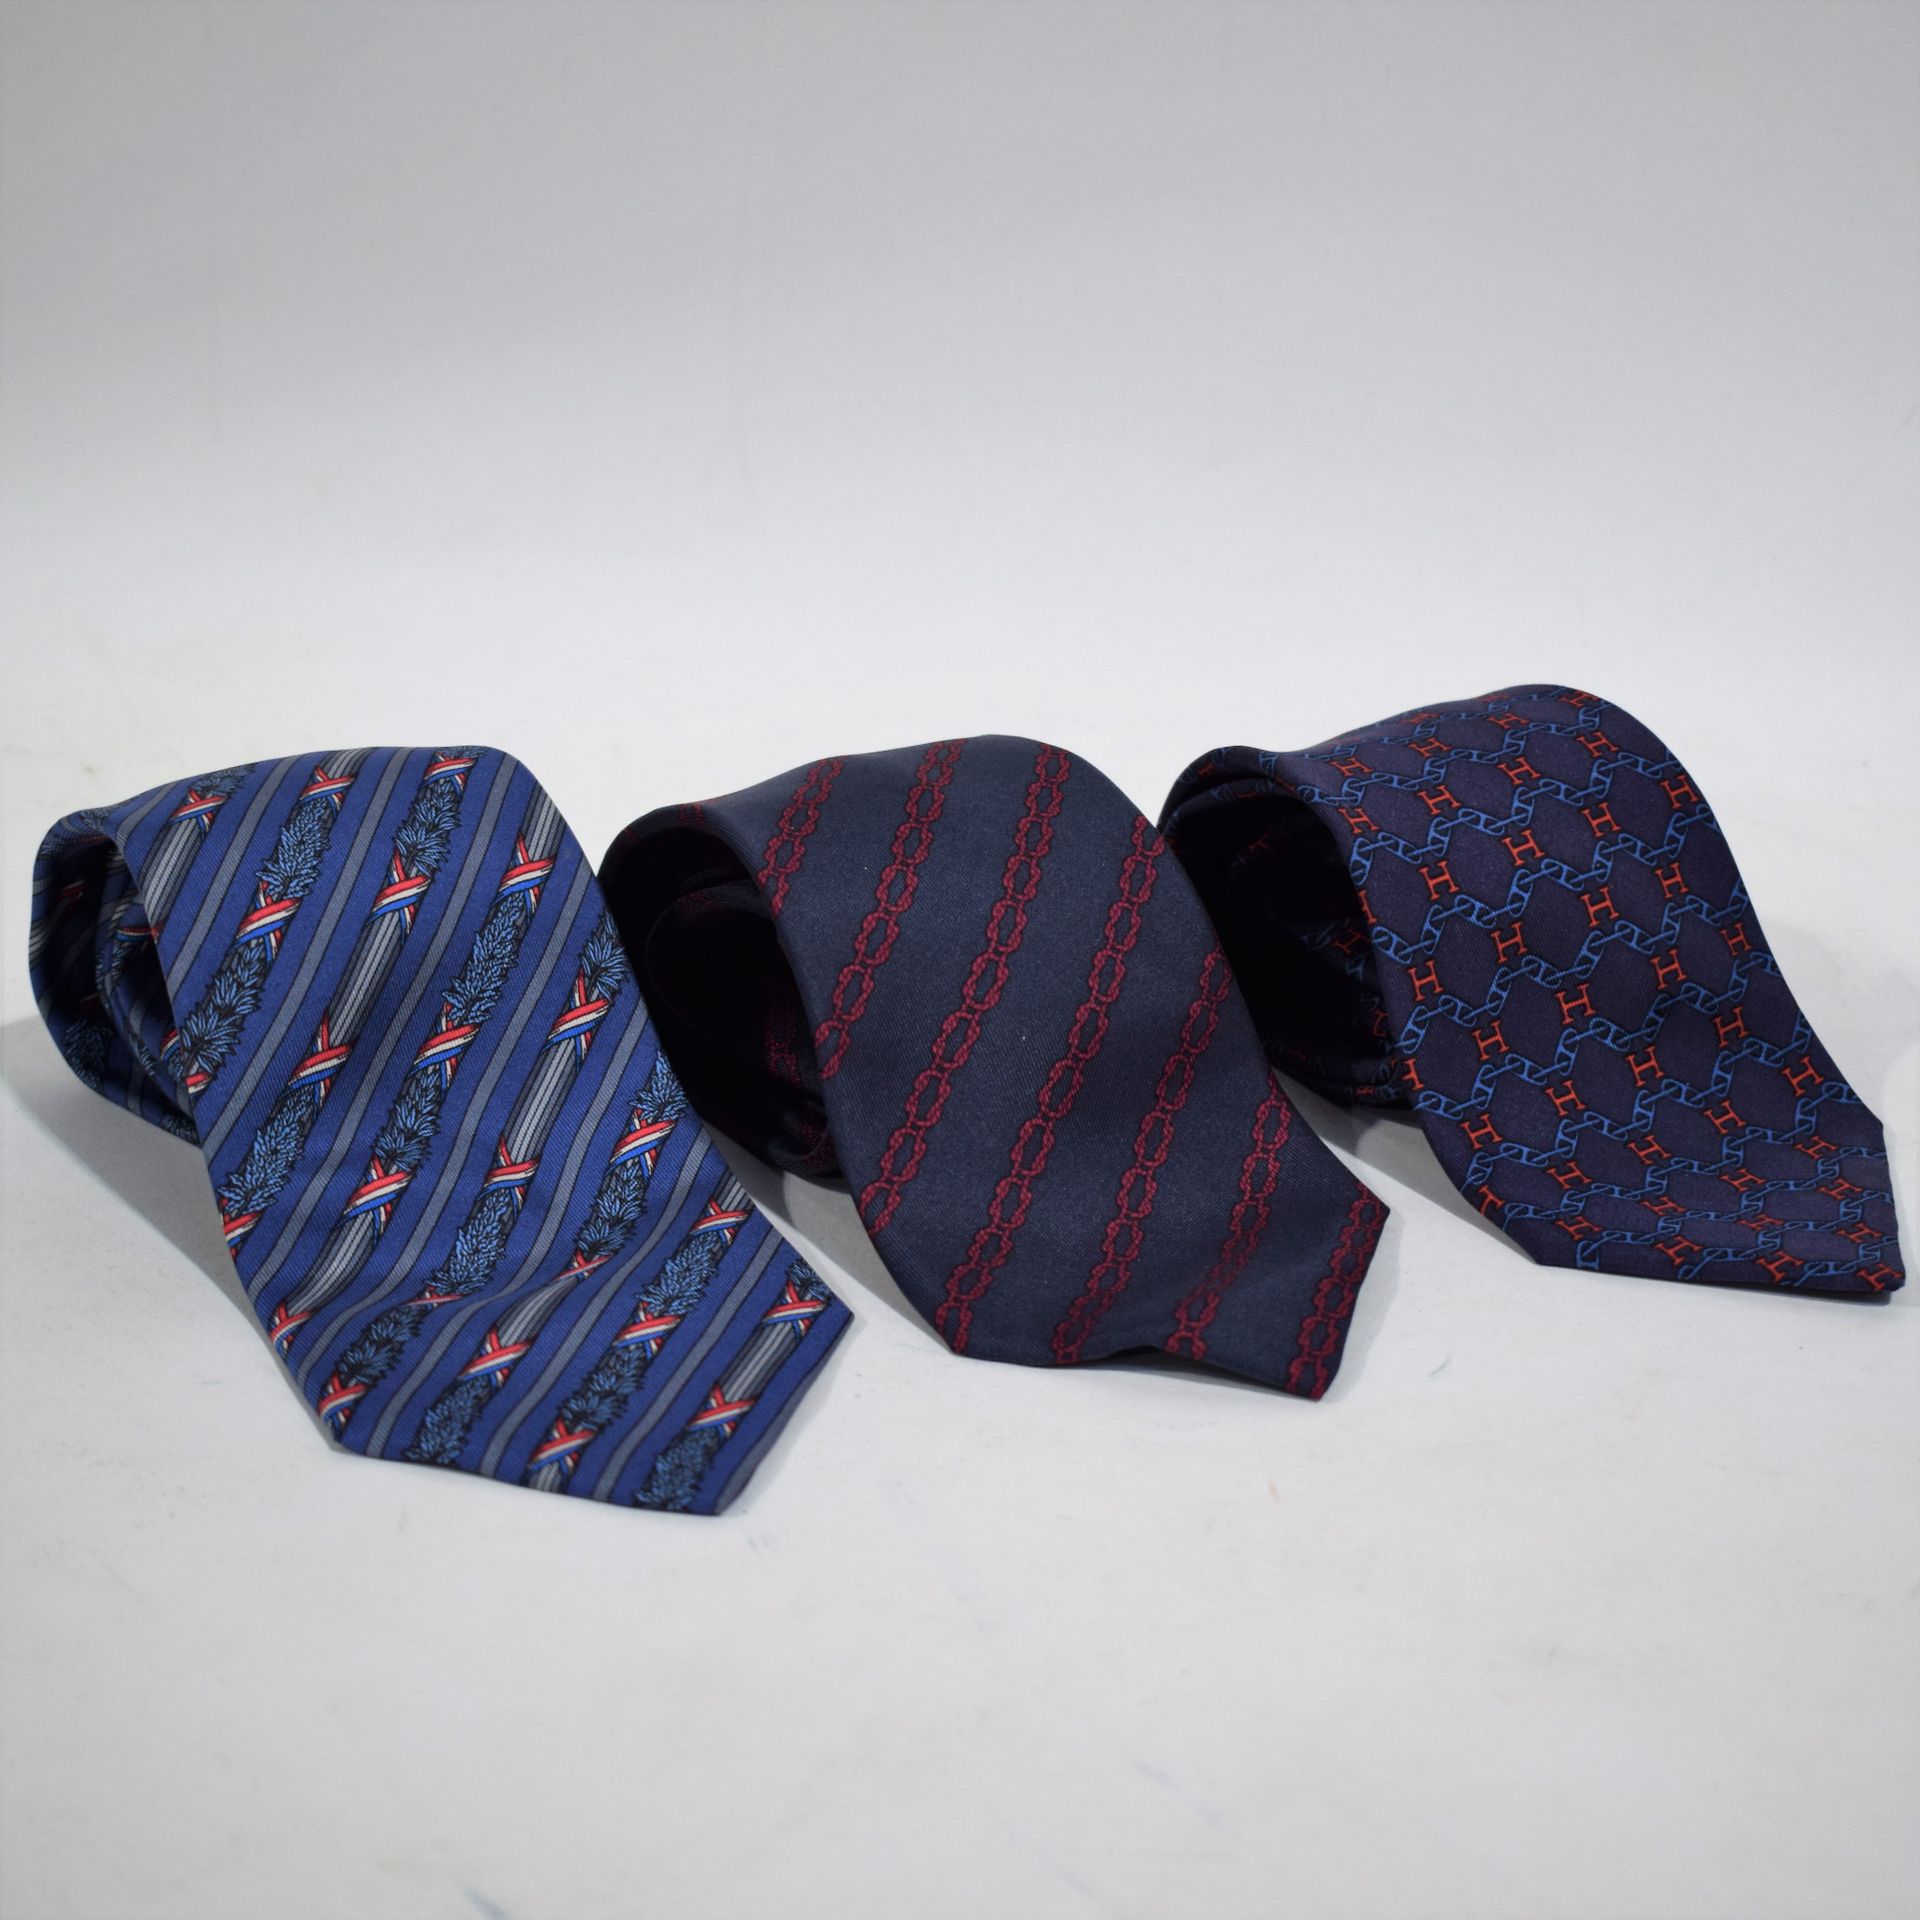 Null (HERMES) Ensemble de 3 cravates HERMES, teintes bleu et rouge, 100% soie